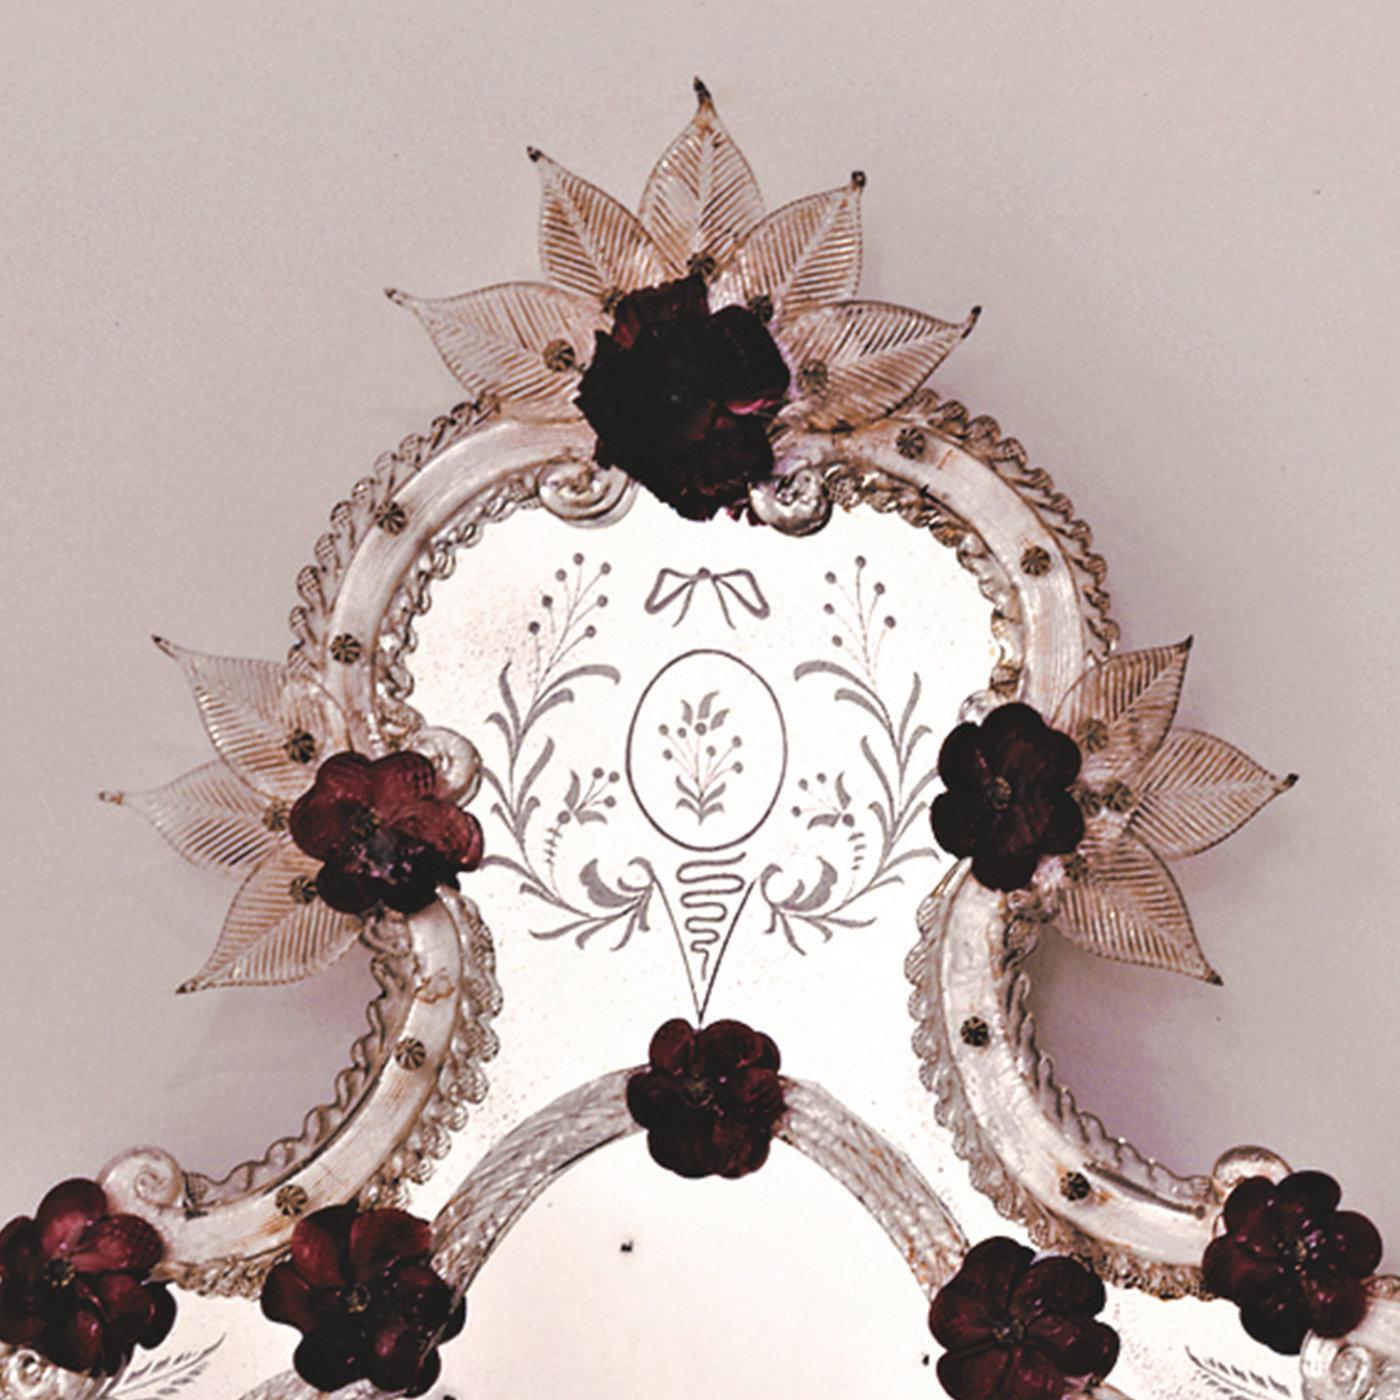 Diese reizvolle Reproduktion eines antiken Spiegels zeichnet sich durch ein geschwungenes Profil mit dreidimensionalen Rosen- und Blumeneinsätzen aus kostbarer, korallenfarbener Glaspaste aus, die einen zarten, femininen Charme versprühen. Die